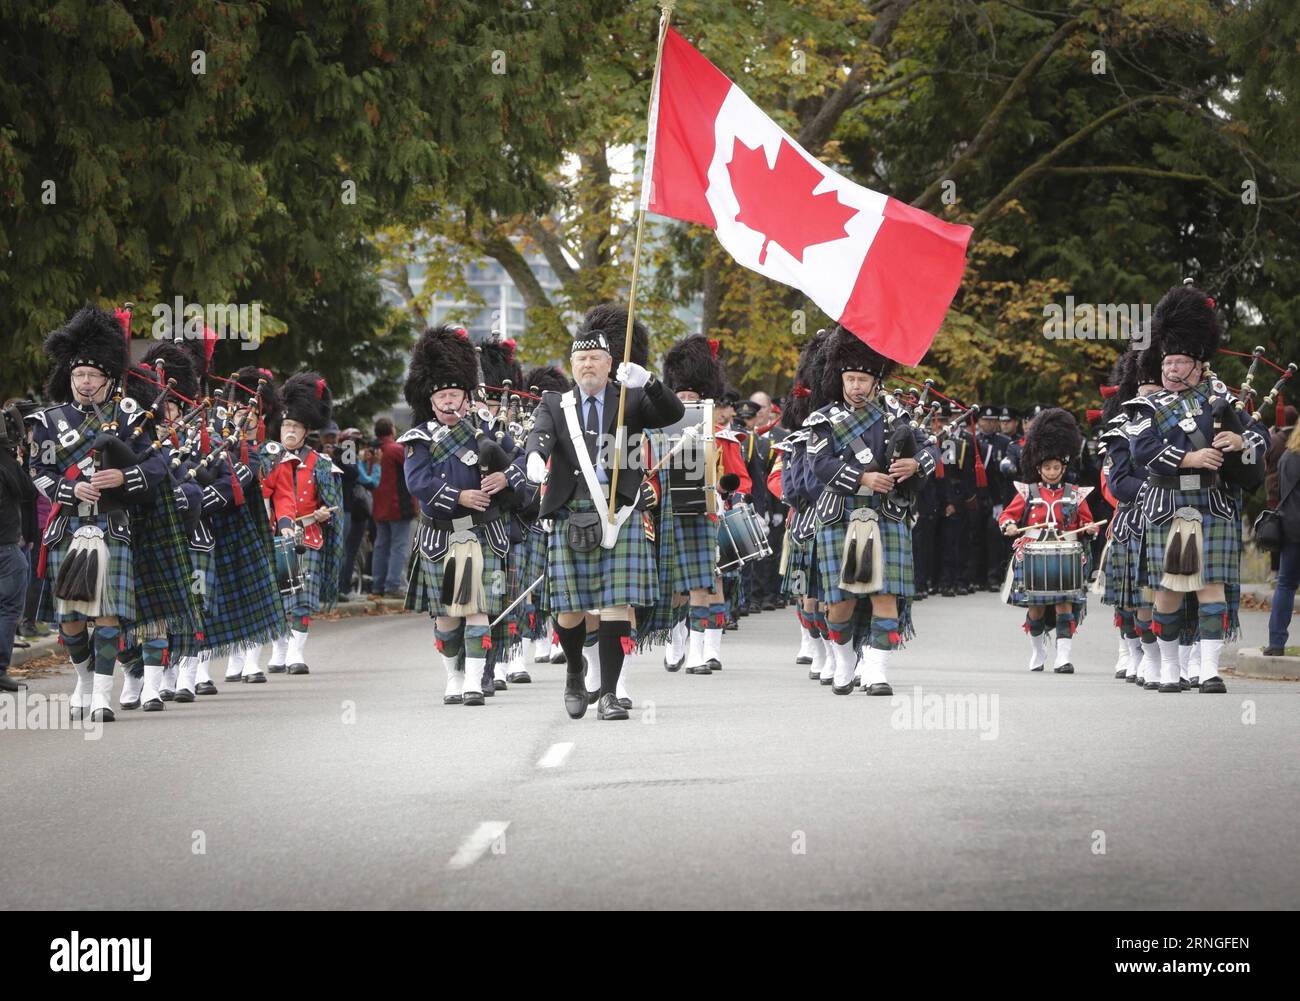 (160926) -- VANCOUVER, le 25 septembre 2016 -- marches de la police Pipe Band lors de l'événement commémoratif de l'application de la loi de la Colombie-Britannique à Vancouver, Canada, le 25 septembre 2016.) (zw) CANADA-VANCOUVER-POLICE-MEMORIAL LiangxSen PUBLICATIONxNOTxINxCHN Vancouver 25 2016 septembre Marches de pipe de la police lors de l'événement commémoratif de l'application de la loi de la Colombie-Britannique à Vancouver Canada 25 2016 septembre ZW Canada Vancouver police Memorial LiangxSen PUBLICATIONxNOTxINxCHN Banque D'Images